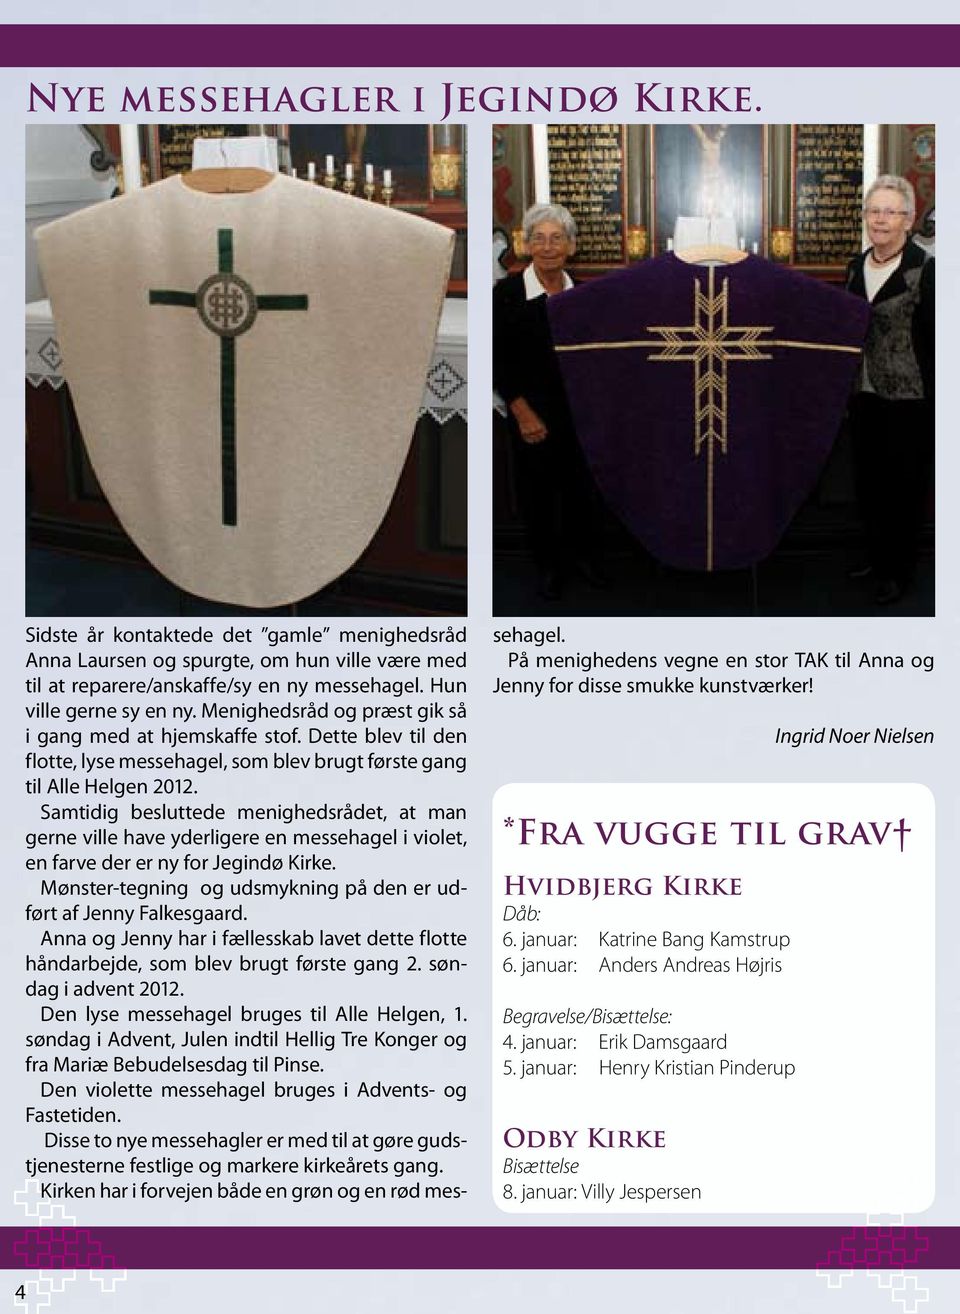 Samtidig besluttede menighedsrådet, at man gerne ville have yderligere en messehagel i violet, en farve der er ny for Jegindø Kirke.